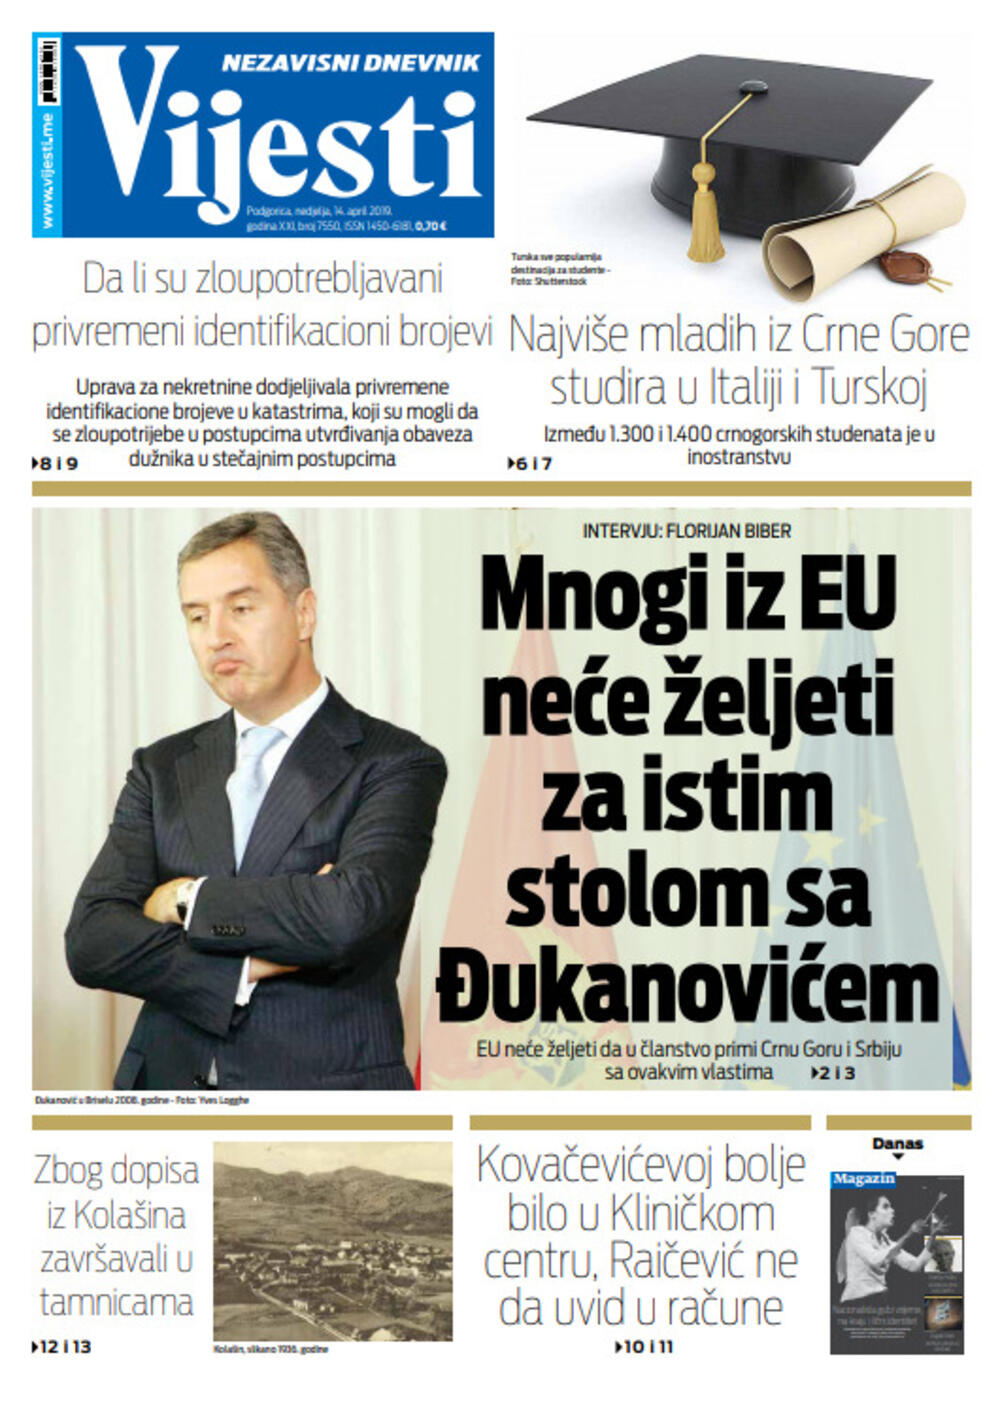 Naslovna strana "Vijesti" za 14. april, Foto: "Vijesti"